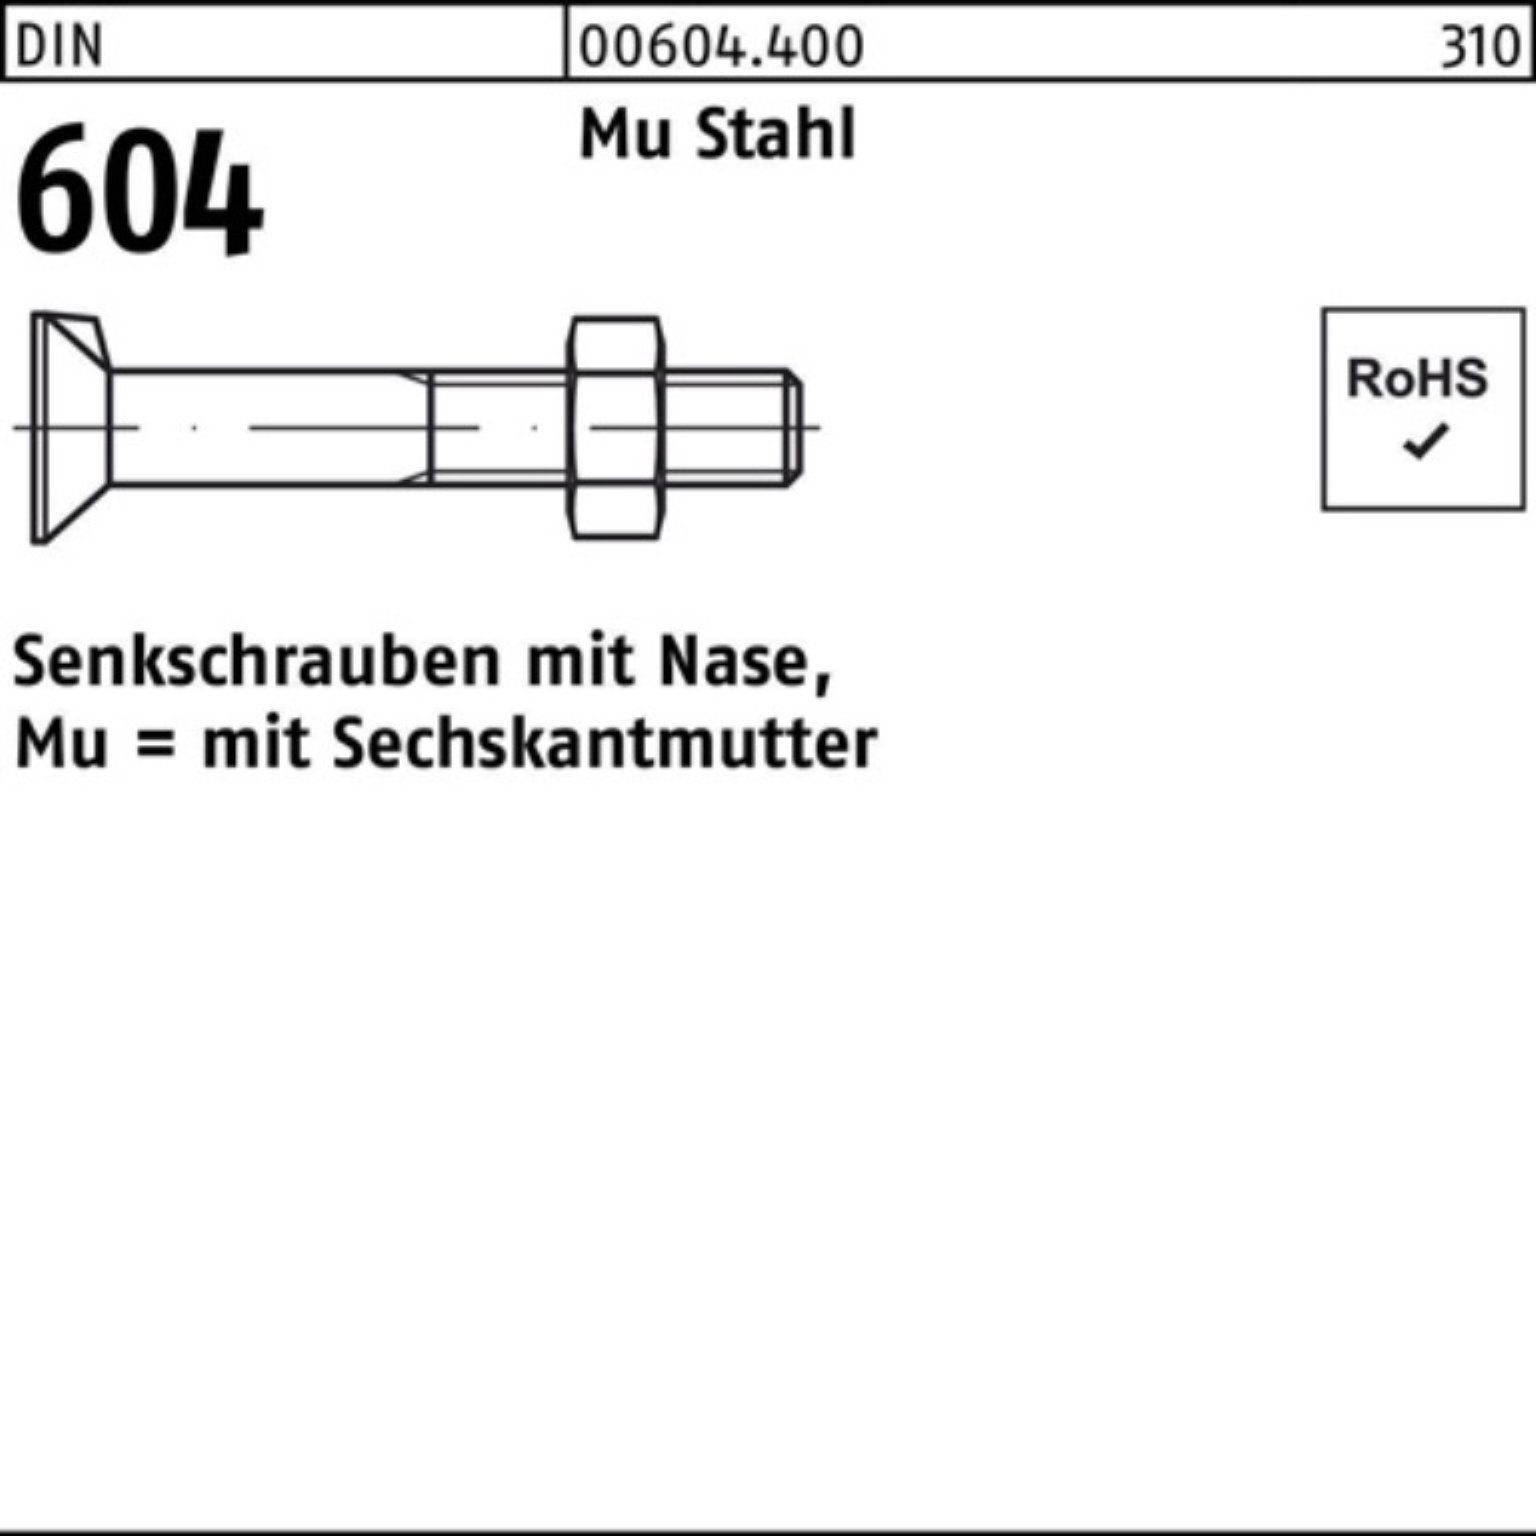 Mu 20 Senkschraube Stahl 200er 604 Pack M6x Reyher DIN Senkschraube Nase/6-ktmutter 40 4.6